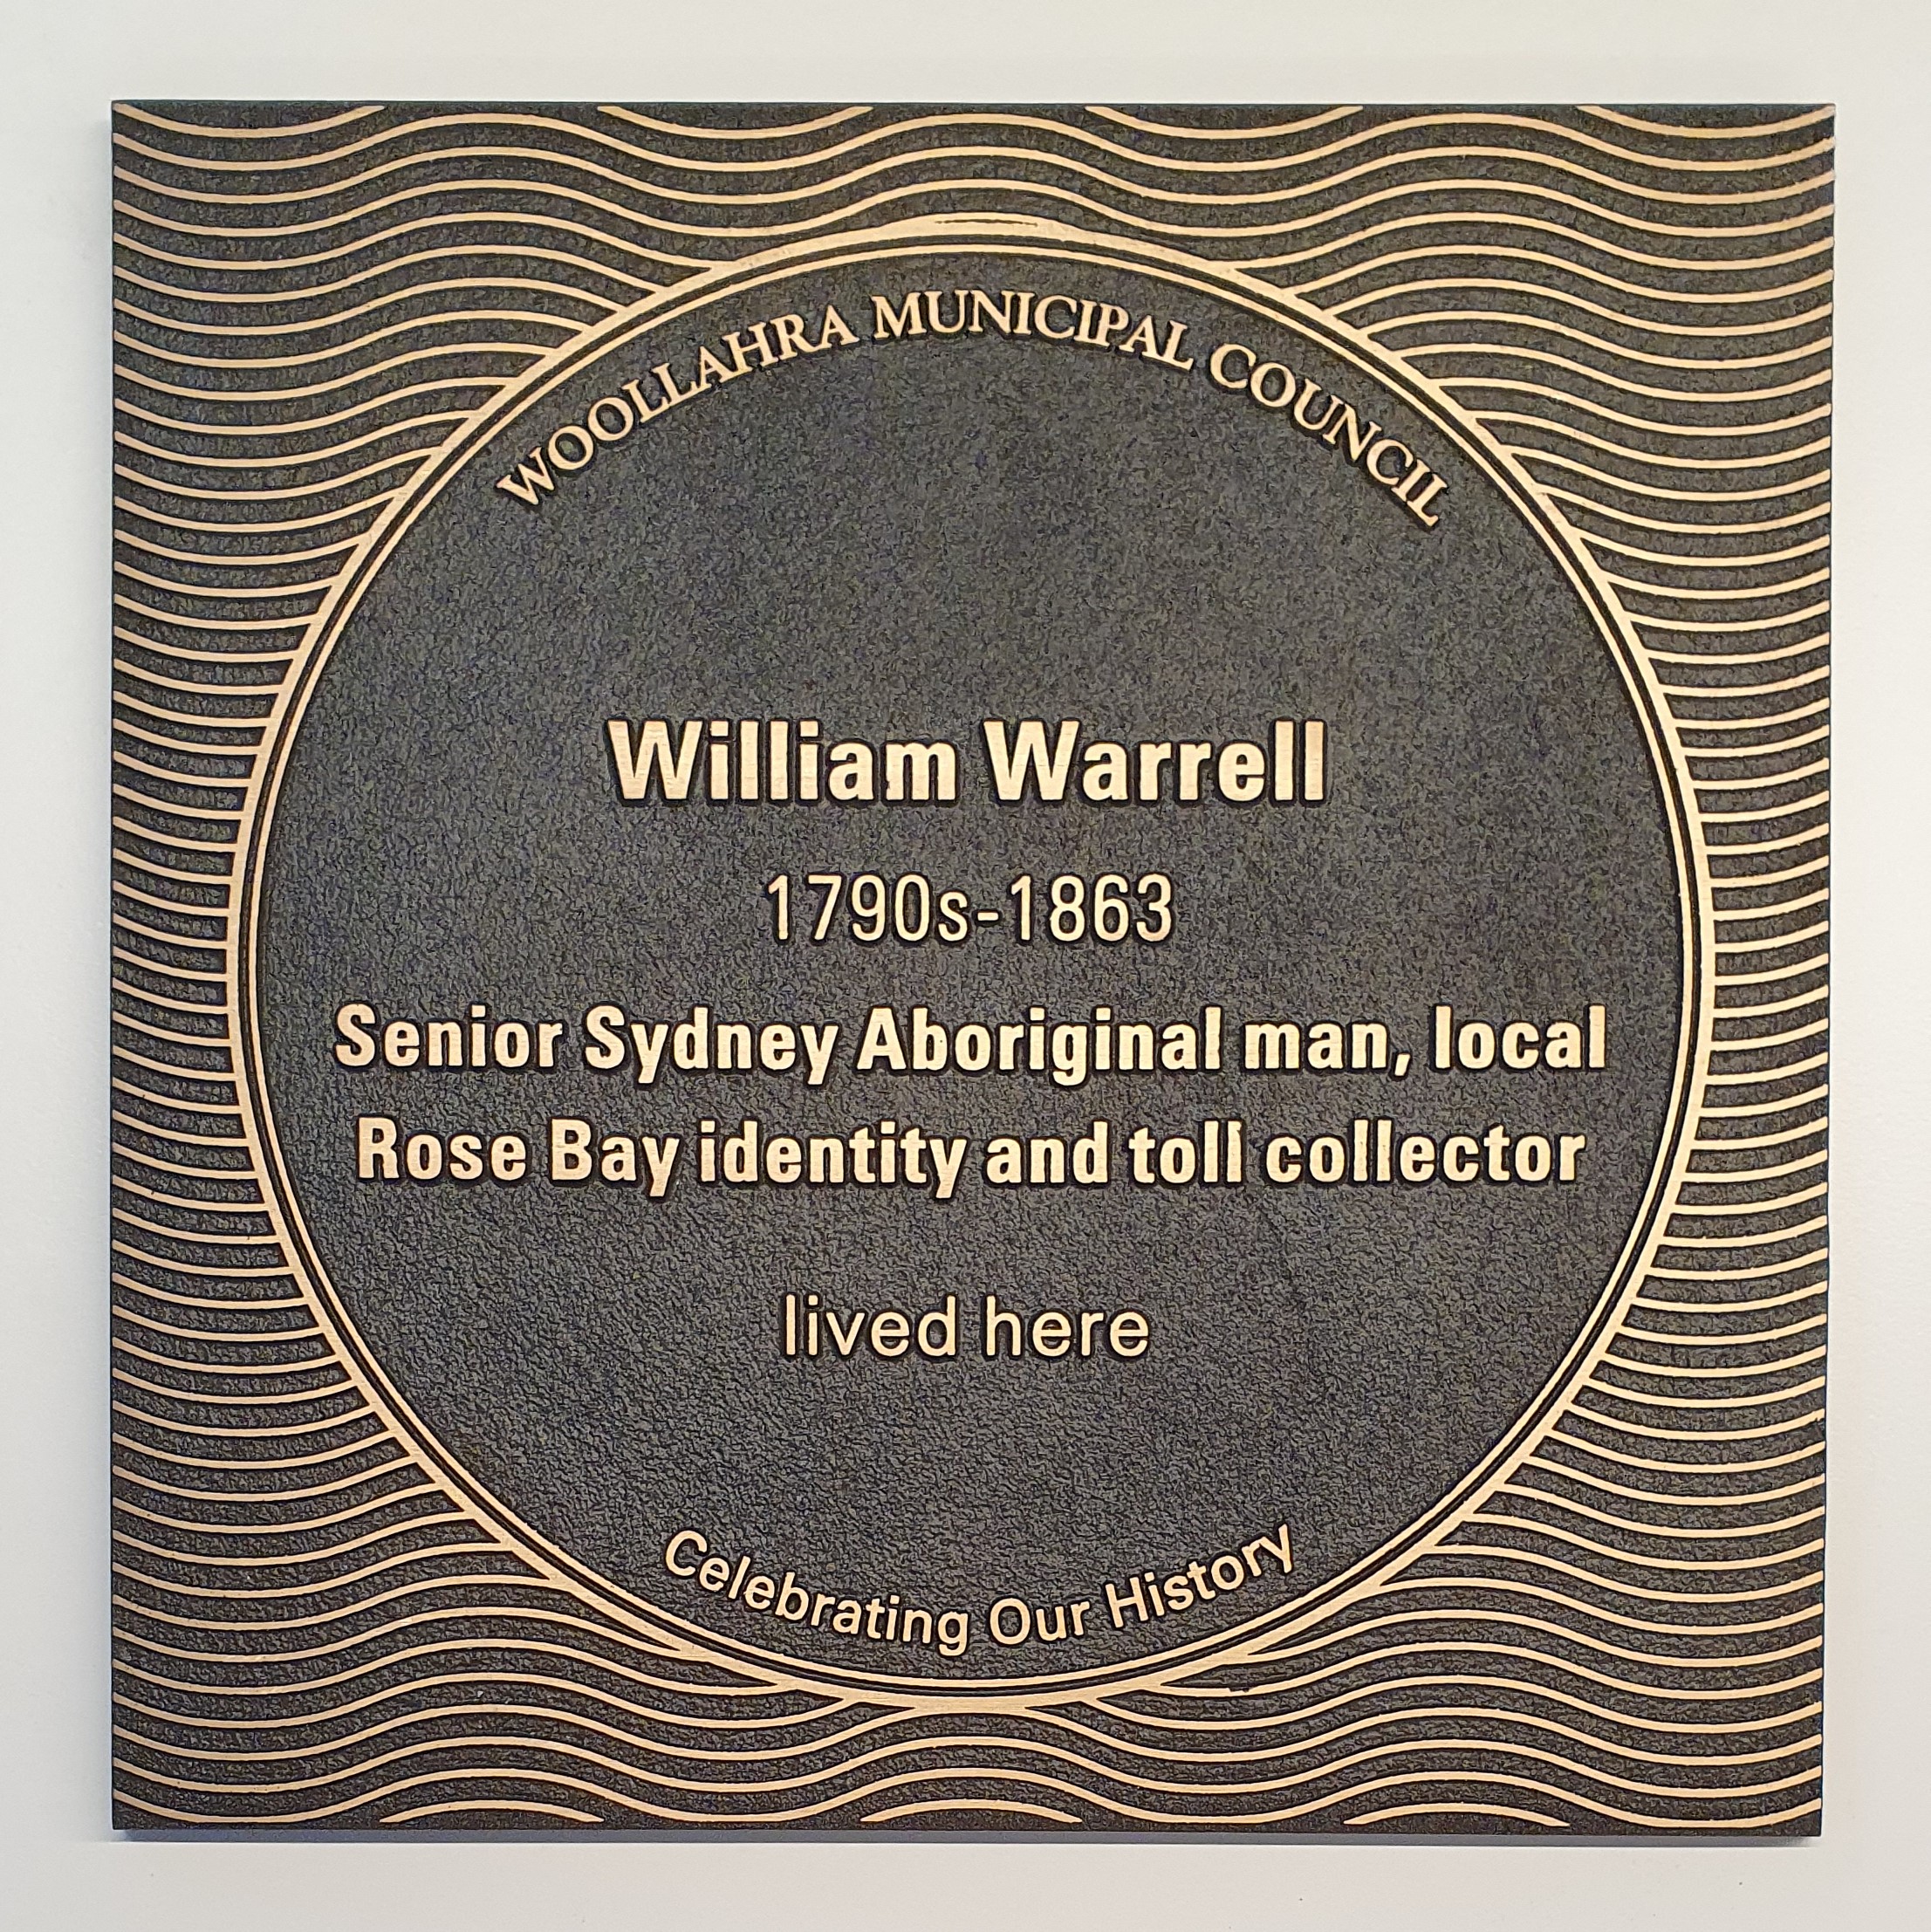 William Warrell plaque